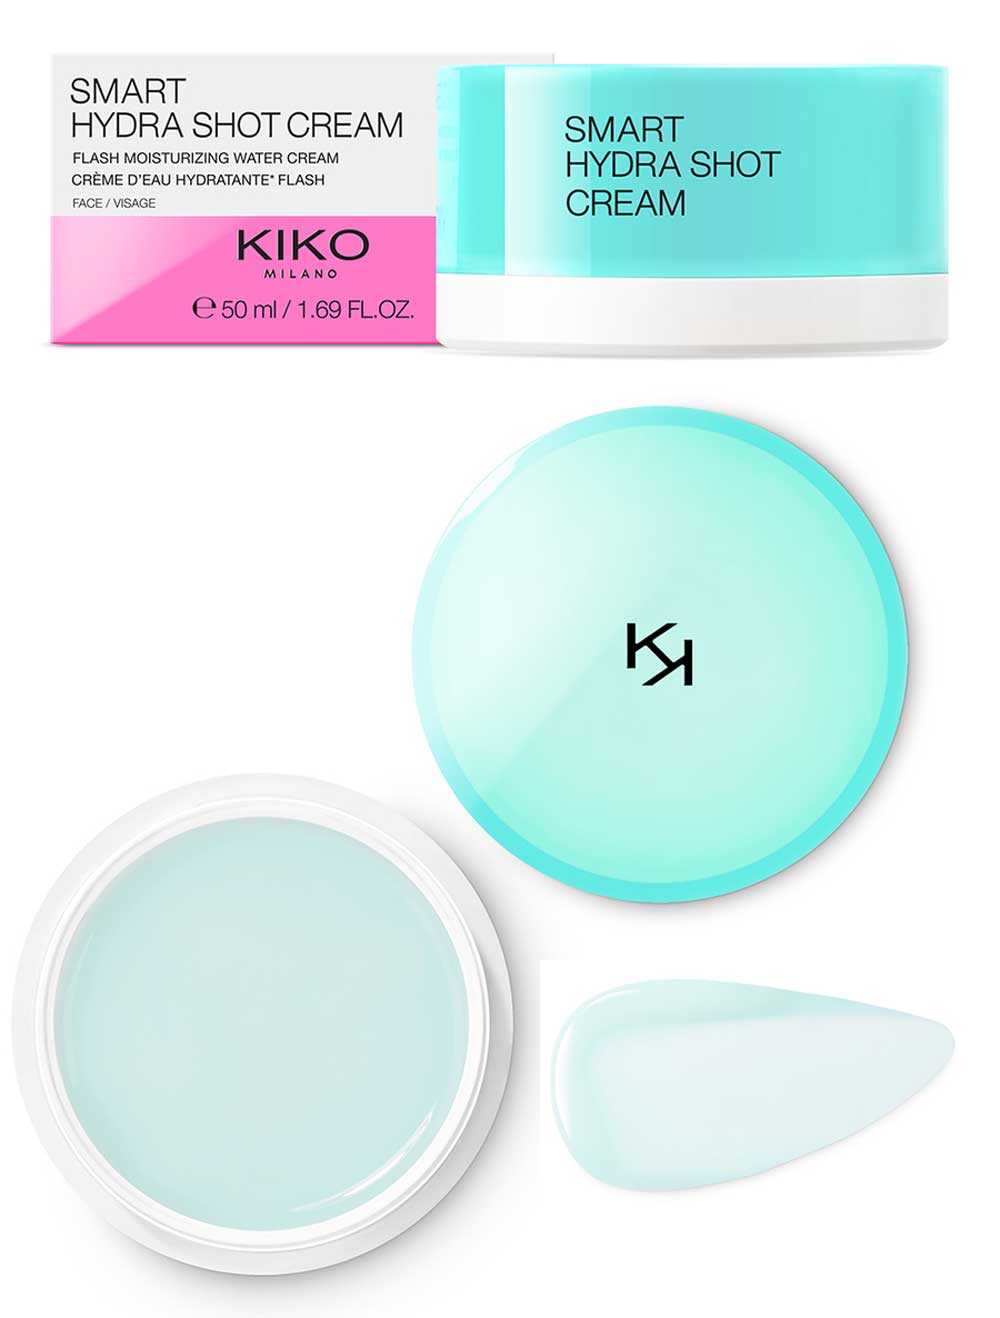 Kiko smart hydra shot cream